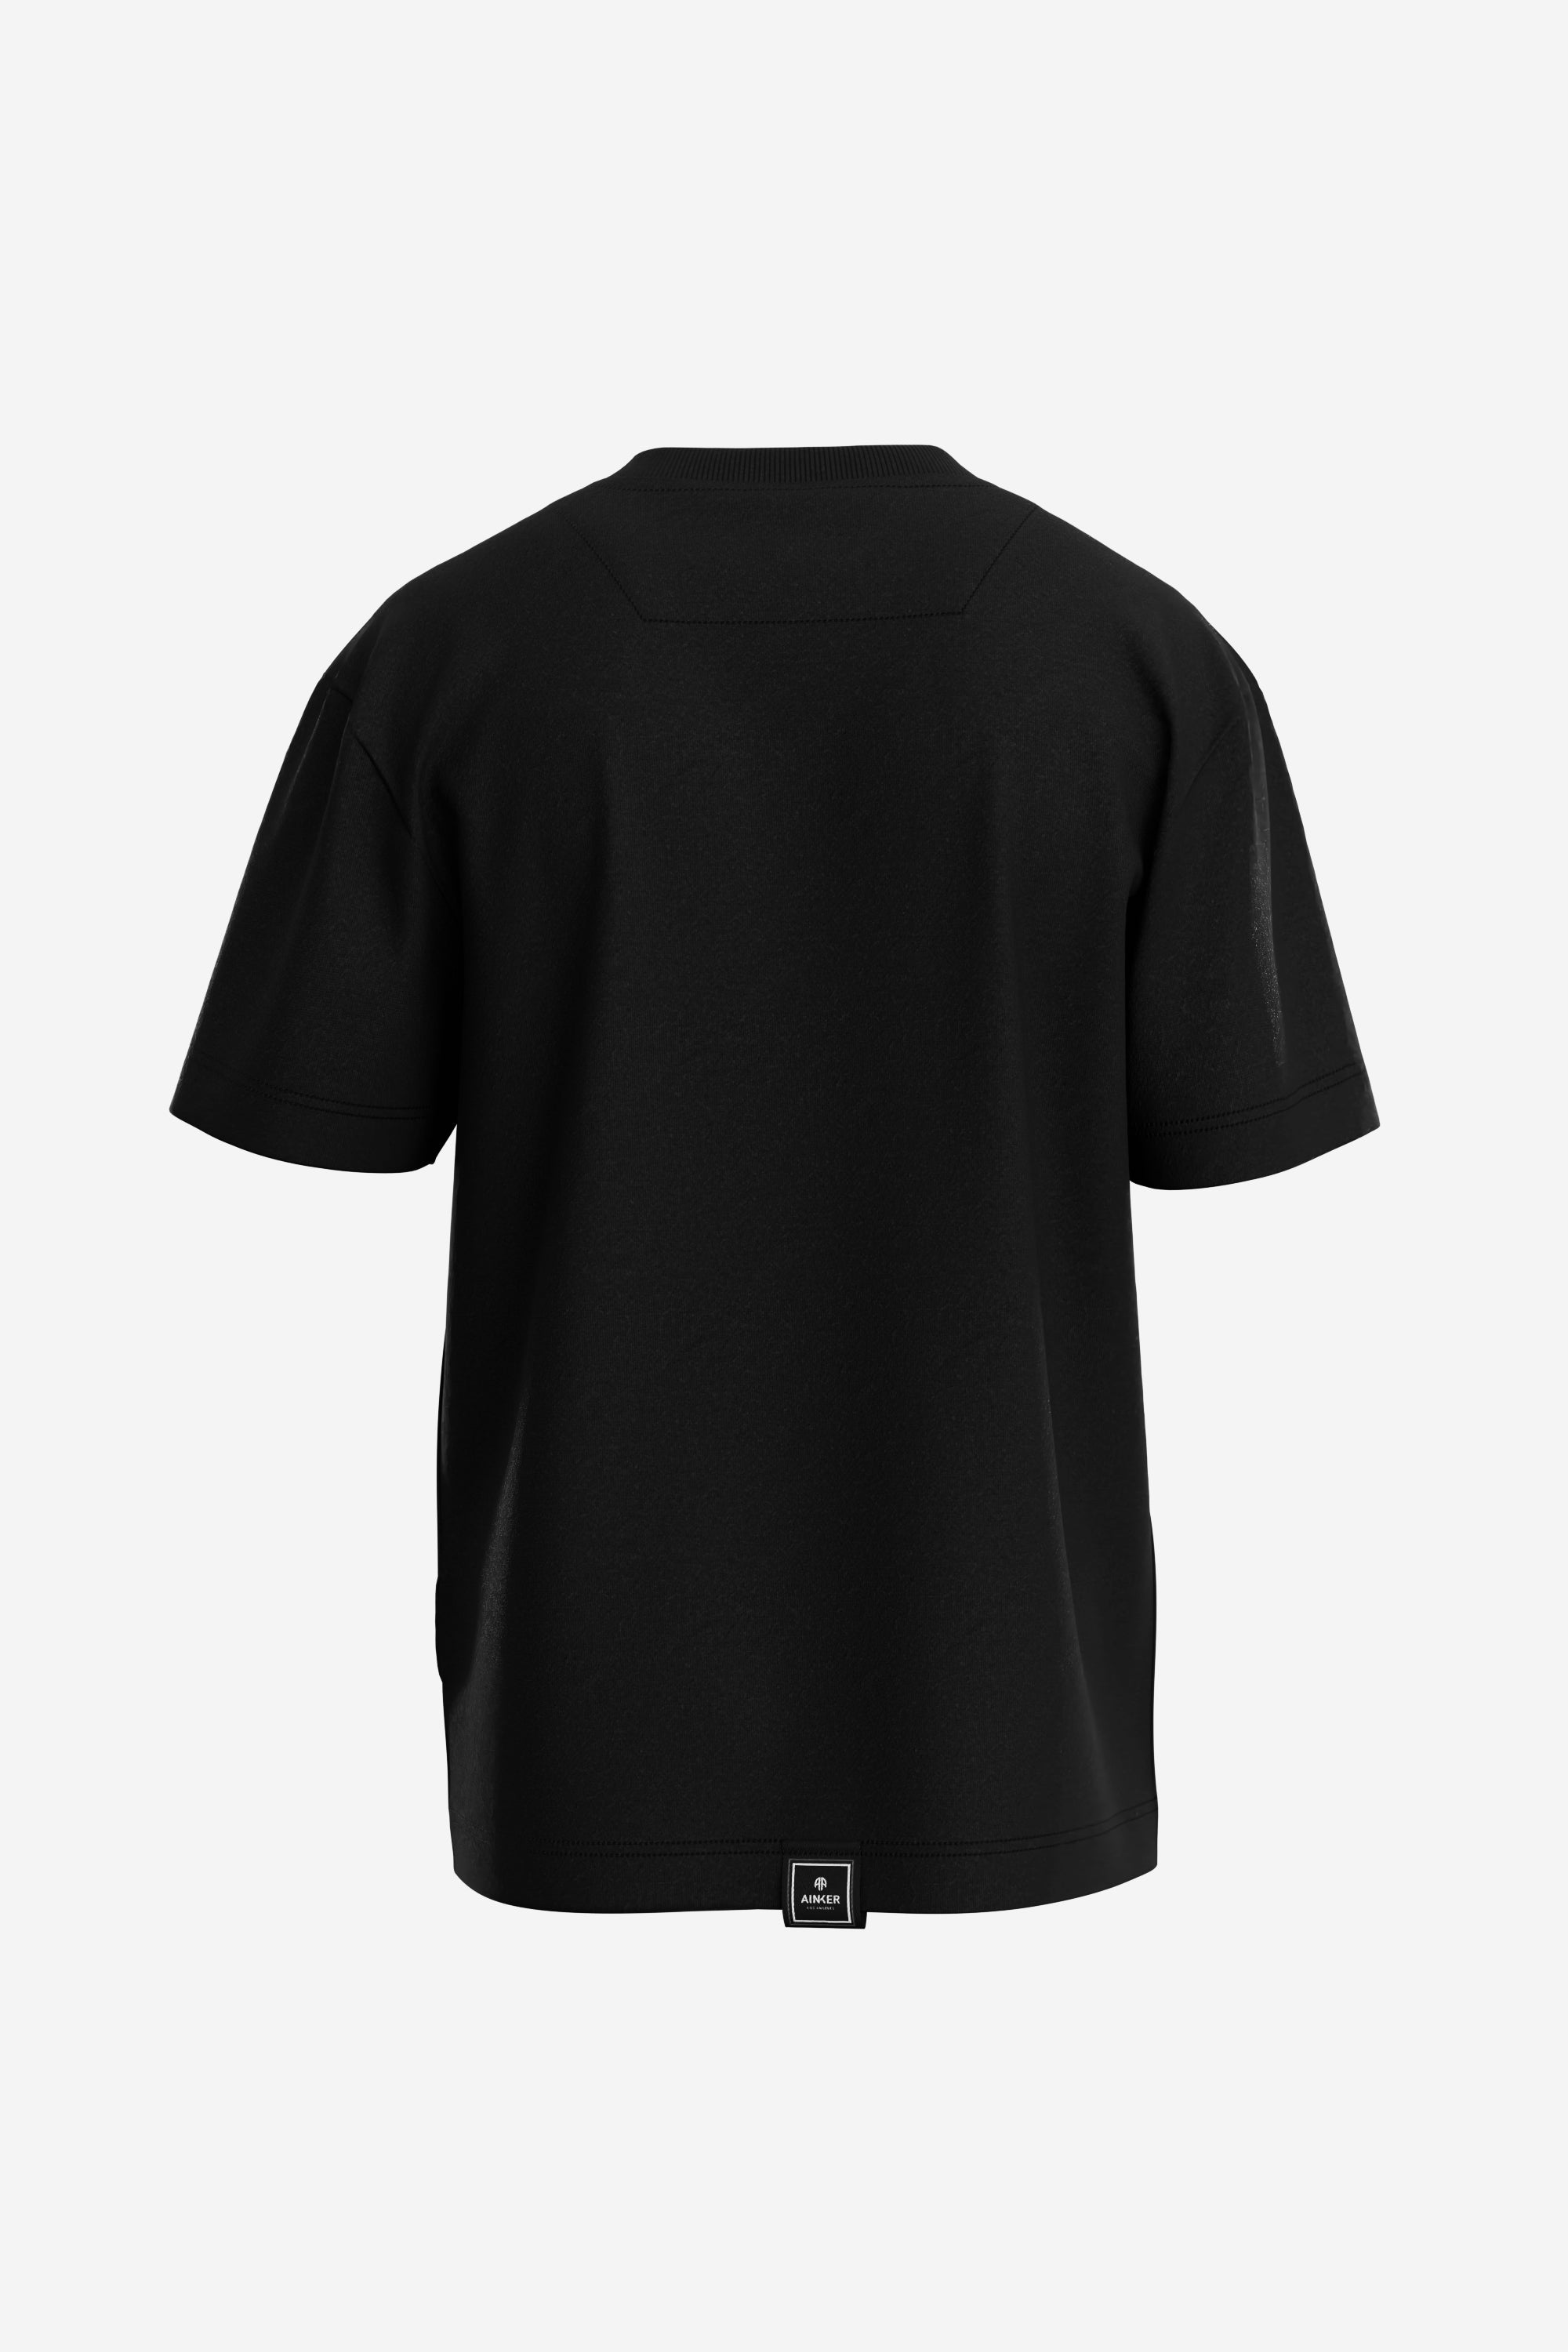 Signiture Black Mercerize T-Shirt